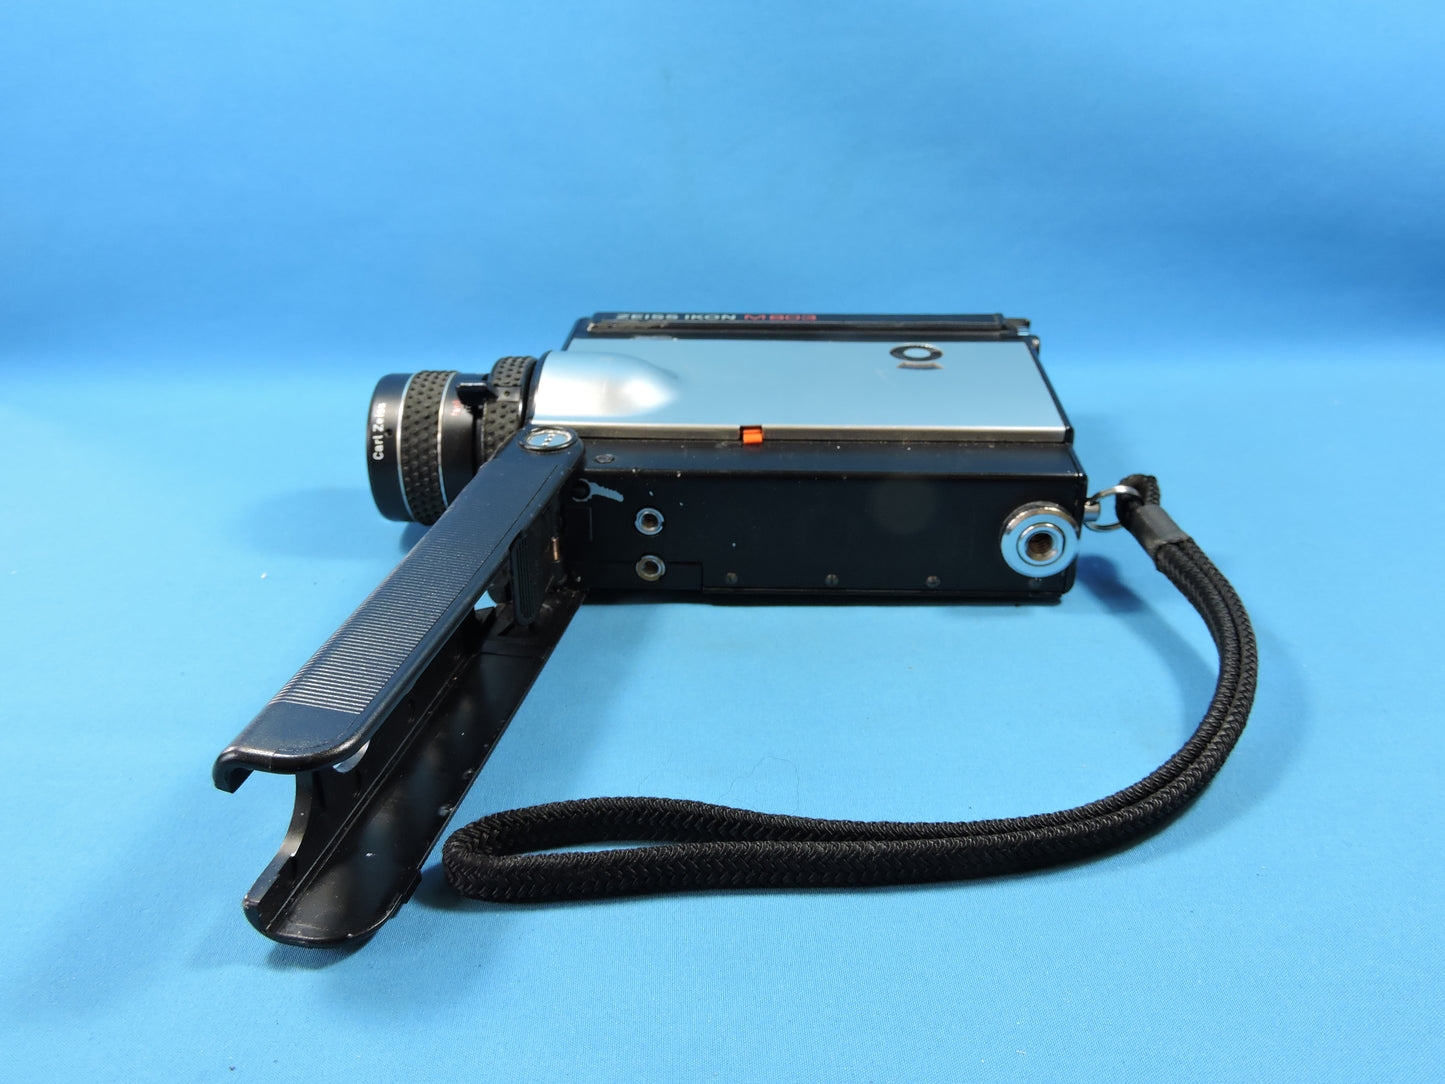 Super 8 mm Schmalfilmkamera - S8T von Nizo